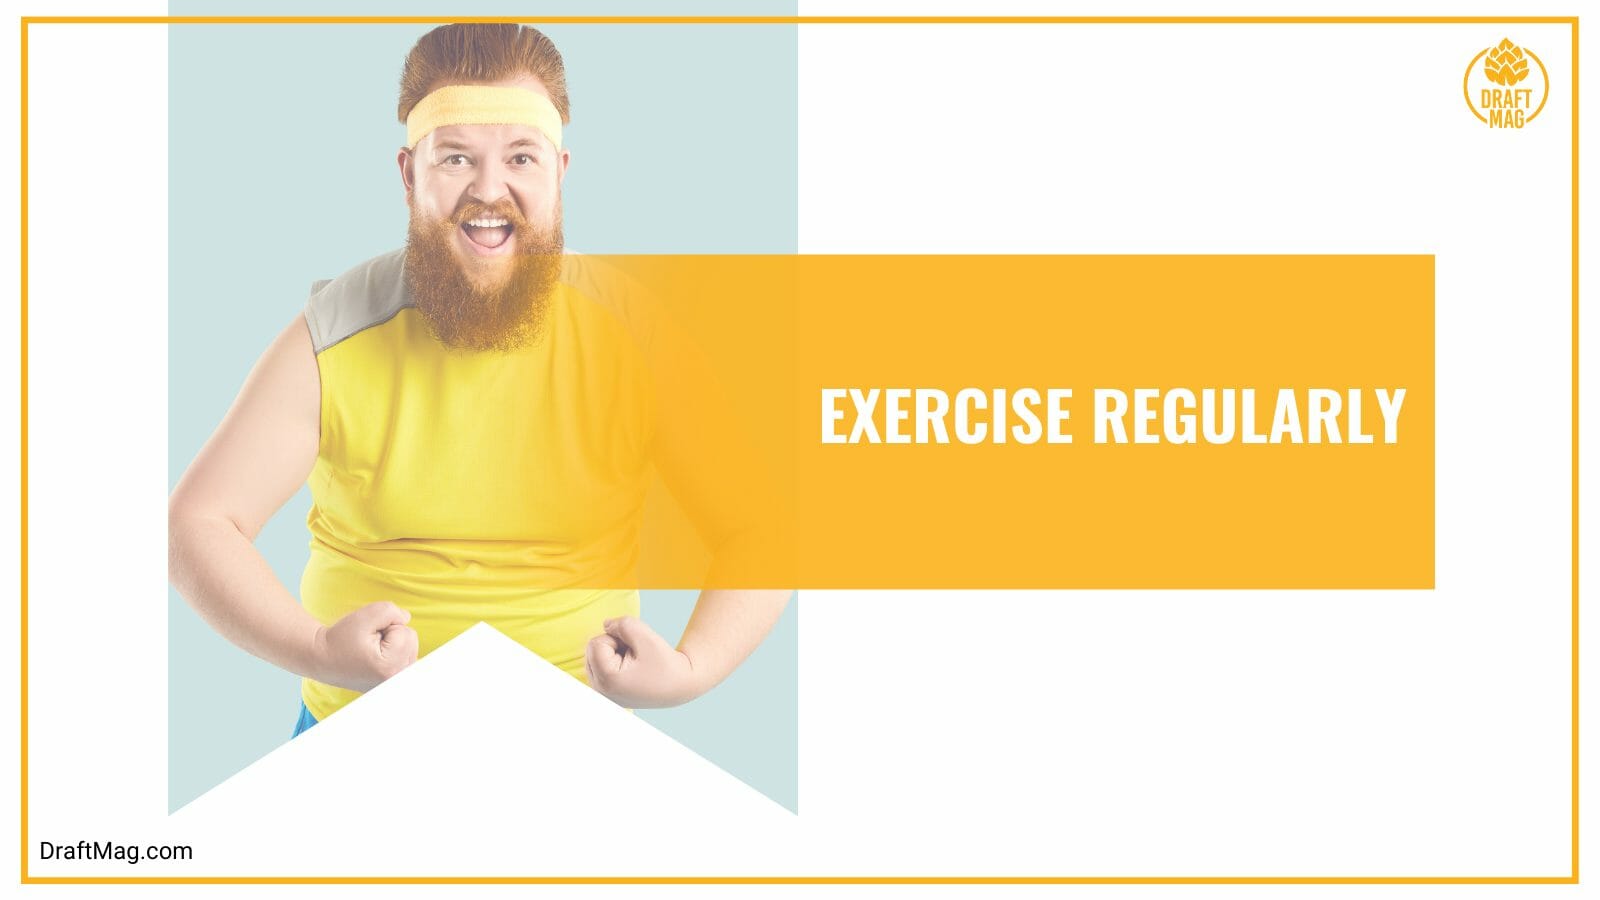 Exercise regularly